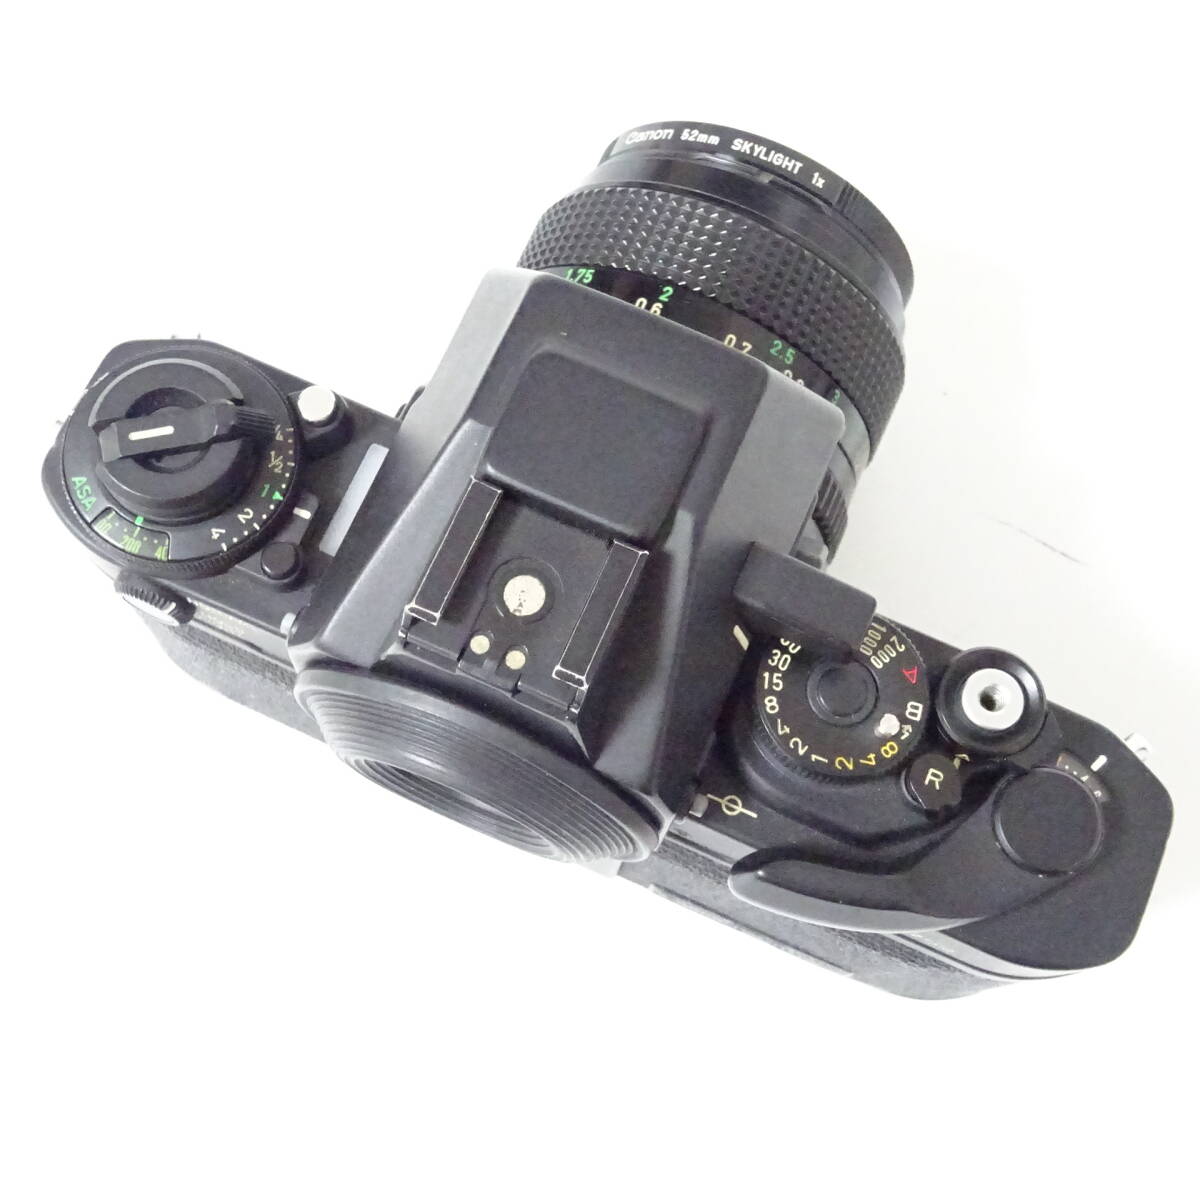 キヤノン F-1 ボディ/FD50mm 1:1.4 レンズセット フィルムカメラ Canon 動作未確認 ジャンク品 60サイズ発送 K-2639778-194-mrrz